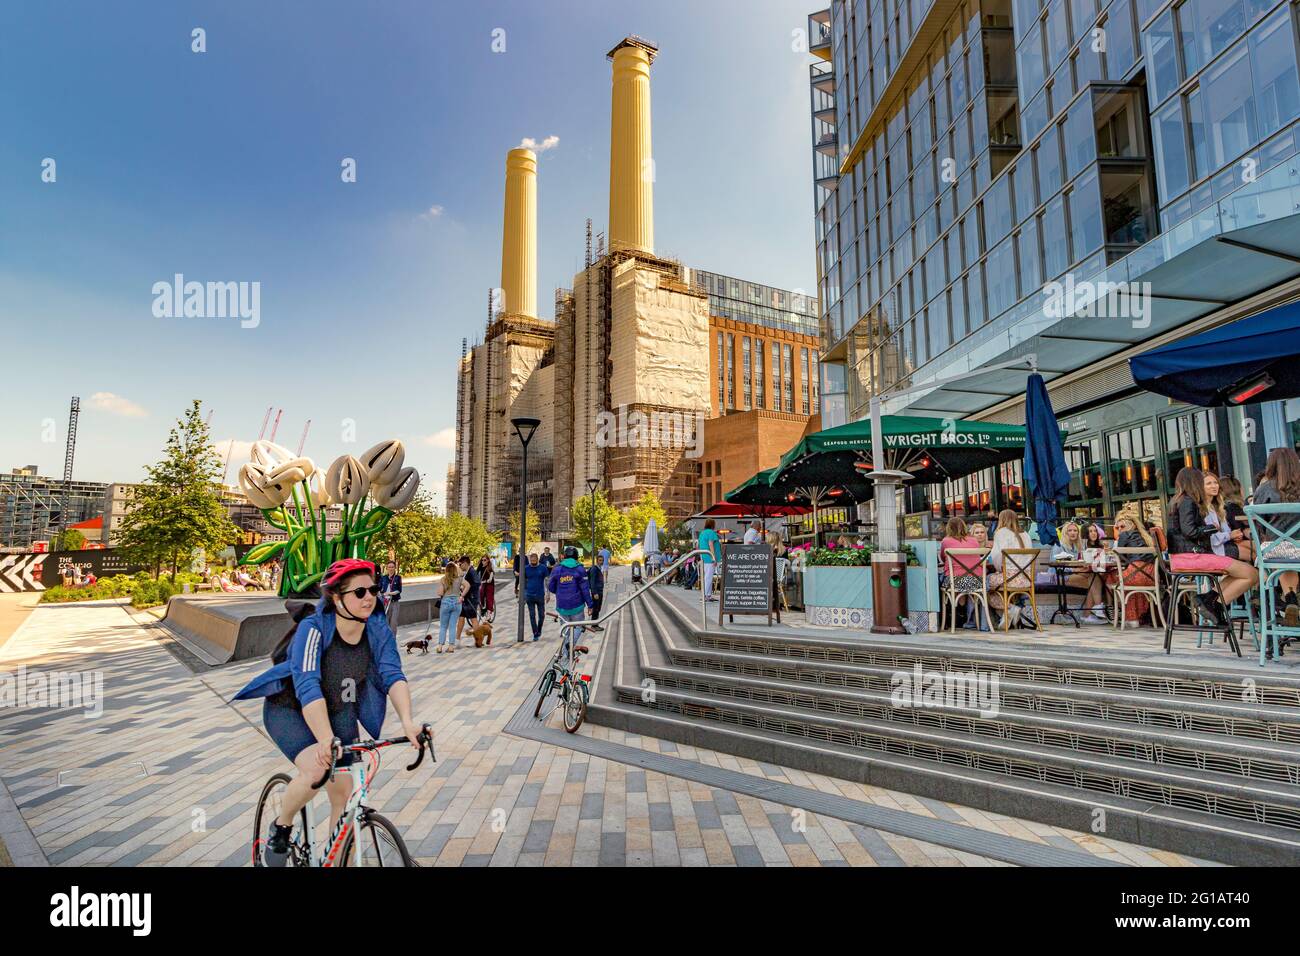 Les personnes dînant dehors, le vélo et la marche au Circus West Village partie du nouveau projet de régénération de la station électrique de Battersea, neuf Elms, Londres UK Banque D'Images